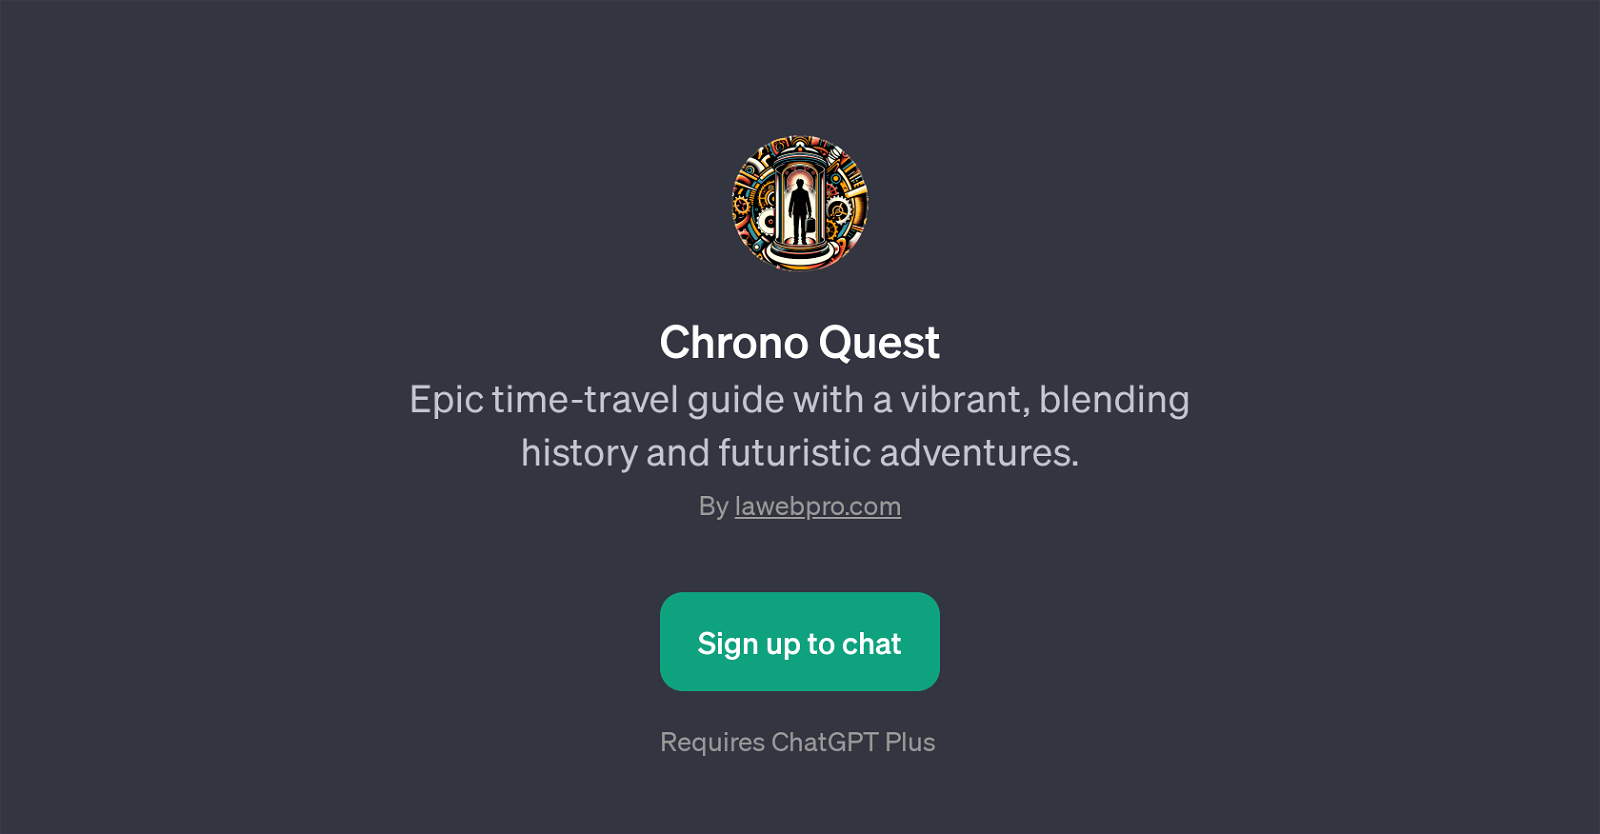 Chrono Quest website